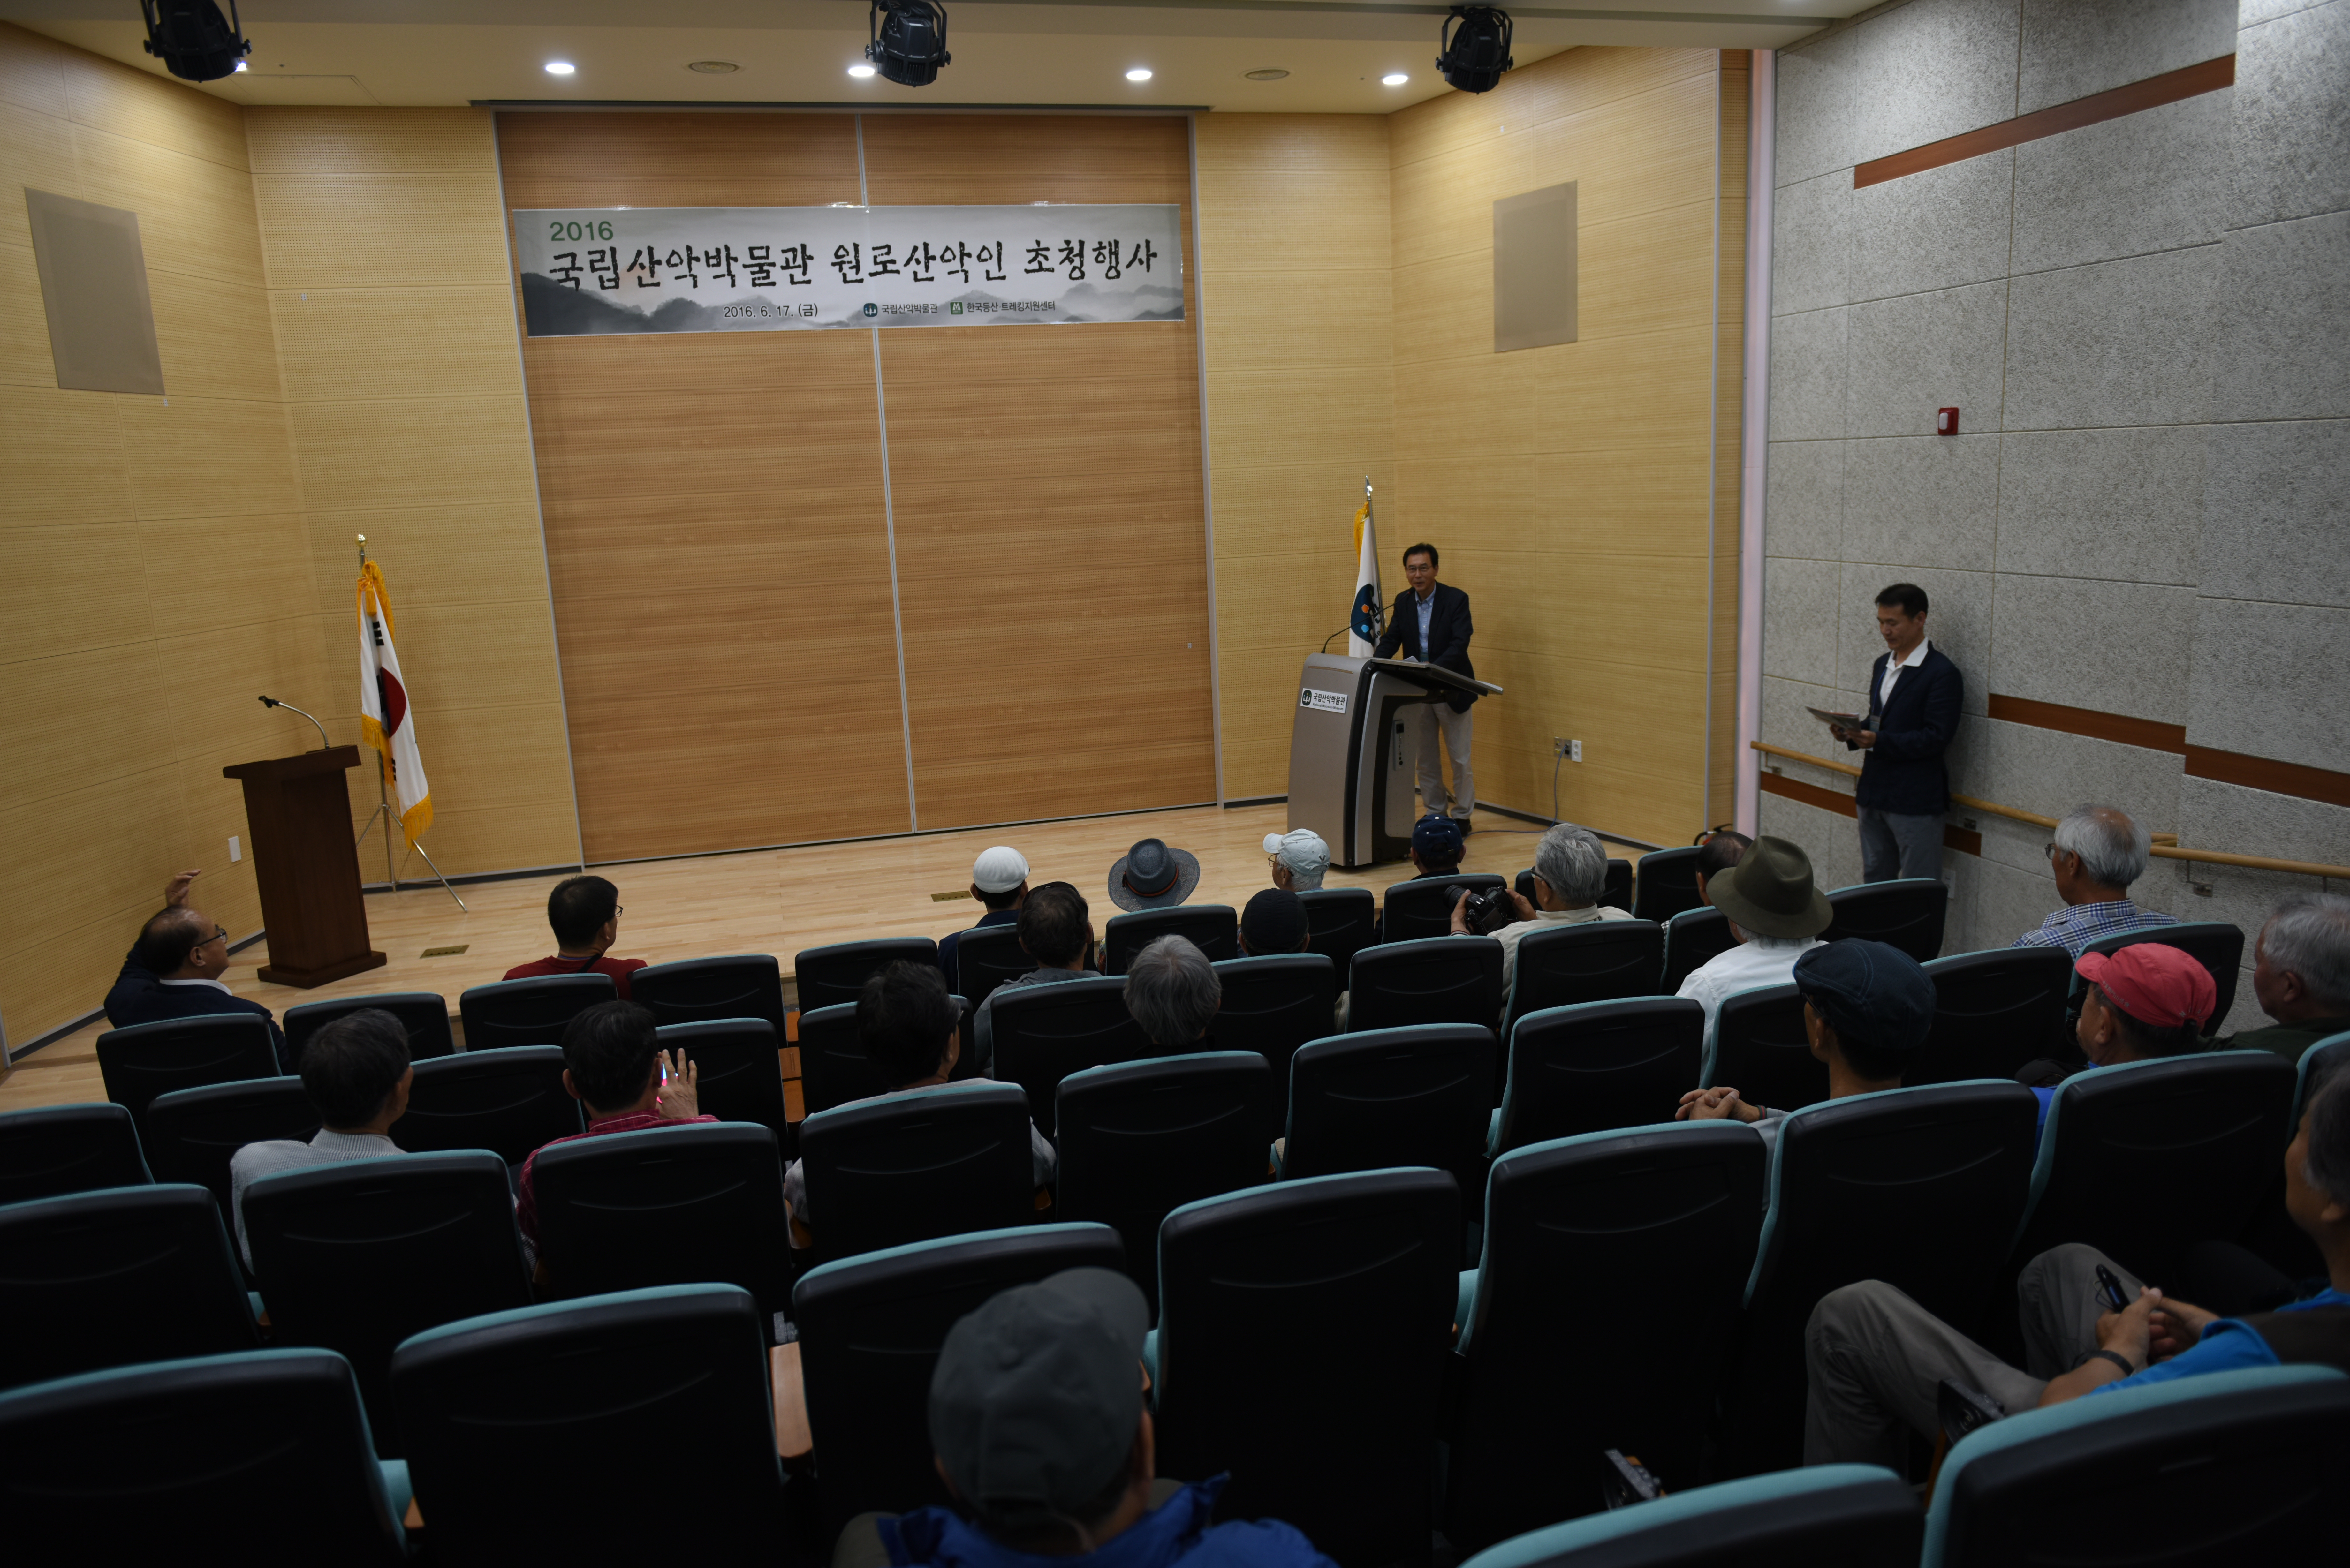 국립산악박물관, ‘2016년도 원로산악인 초청 행사’ 개최